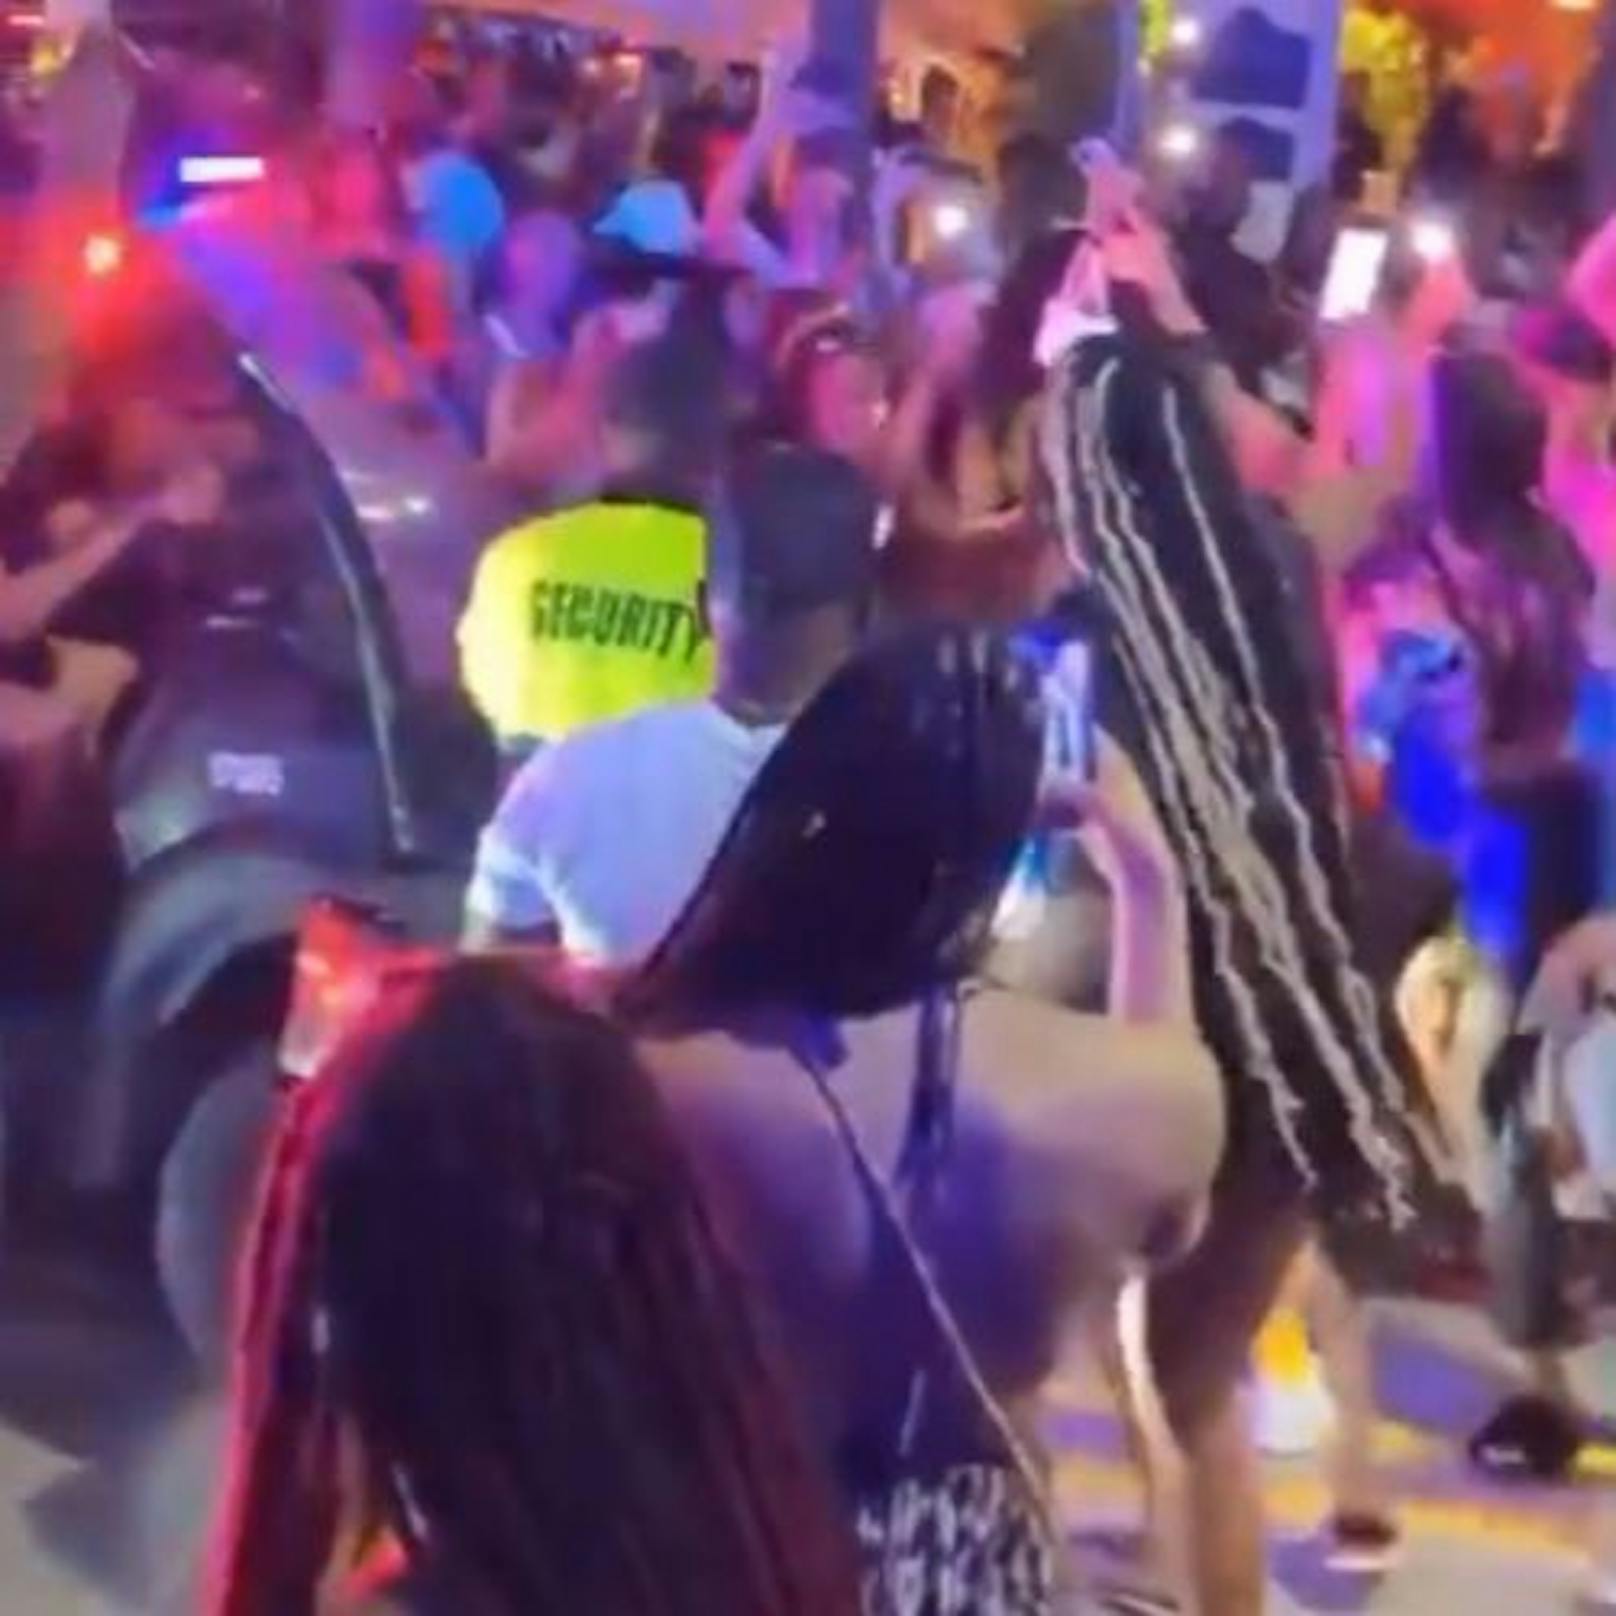 "Unsere Beamten sind erschöpft. Die Party muss aufhören", schreibt die Polizei von Miami Beach. Tausende feierwütige Teenager haben während des Spring Break die Stadt gestürmt.